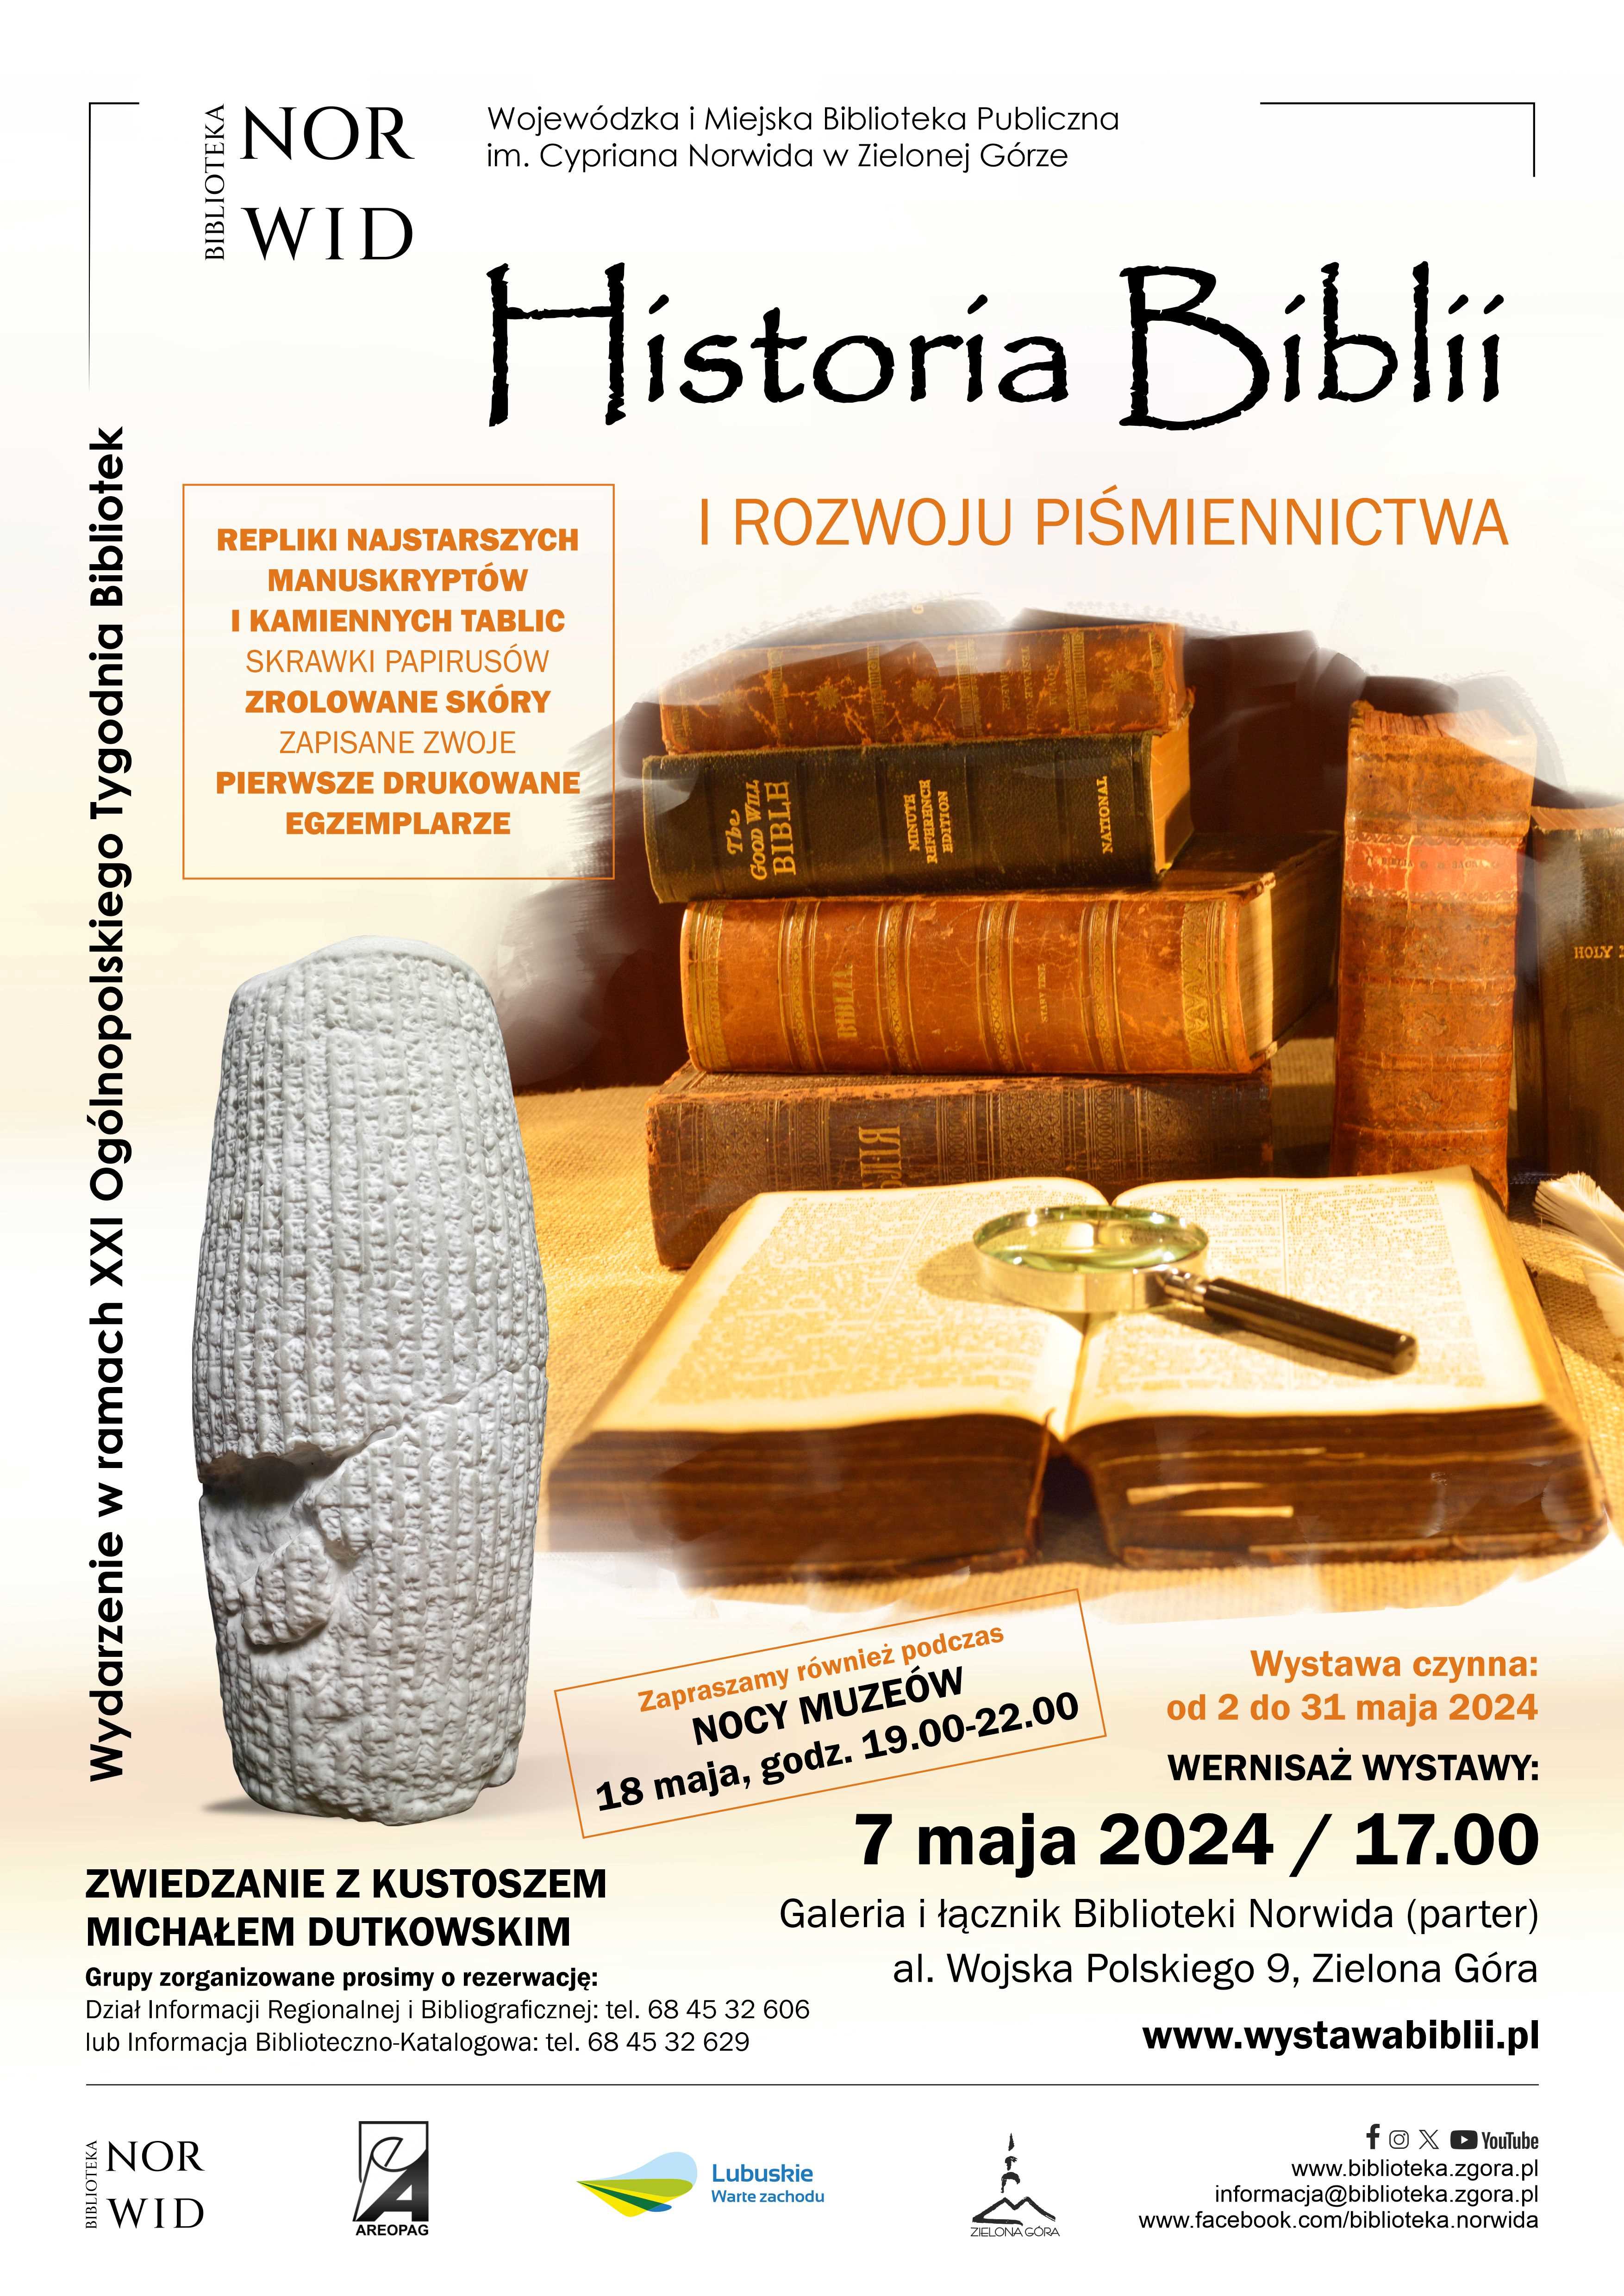 historia-biblii-wystawa-plakat-z-noca-muzeow-1